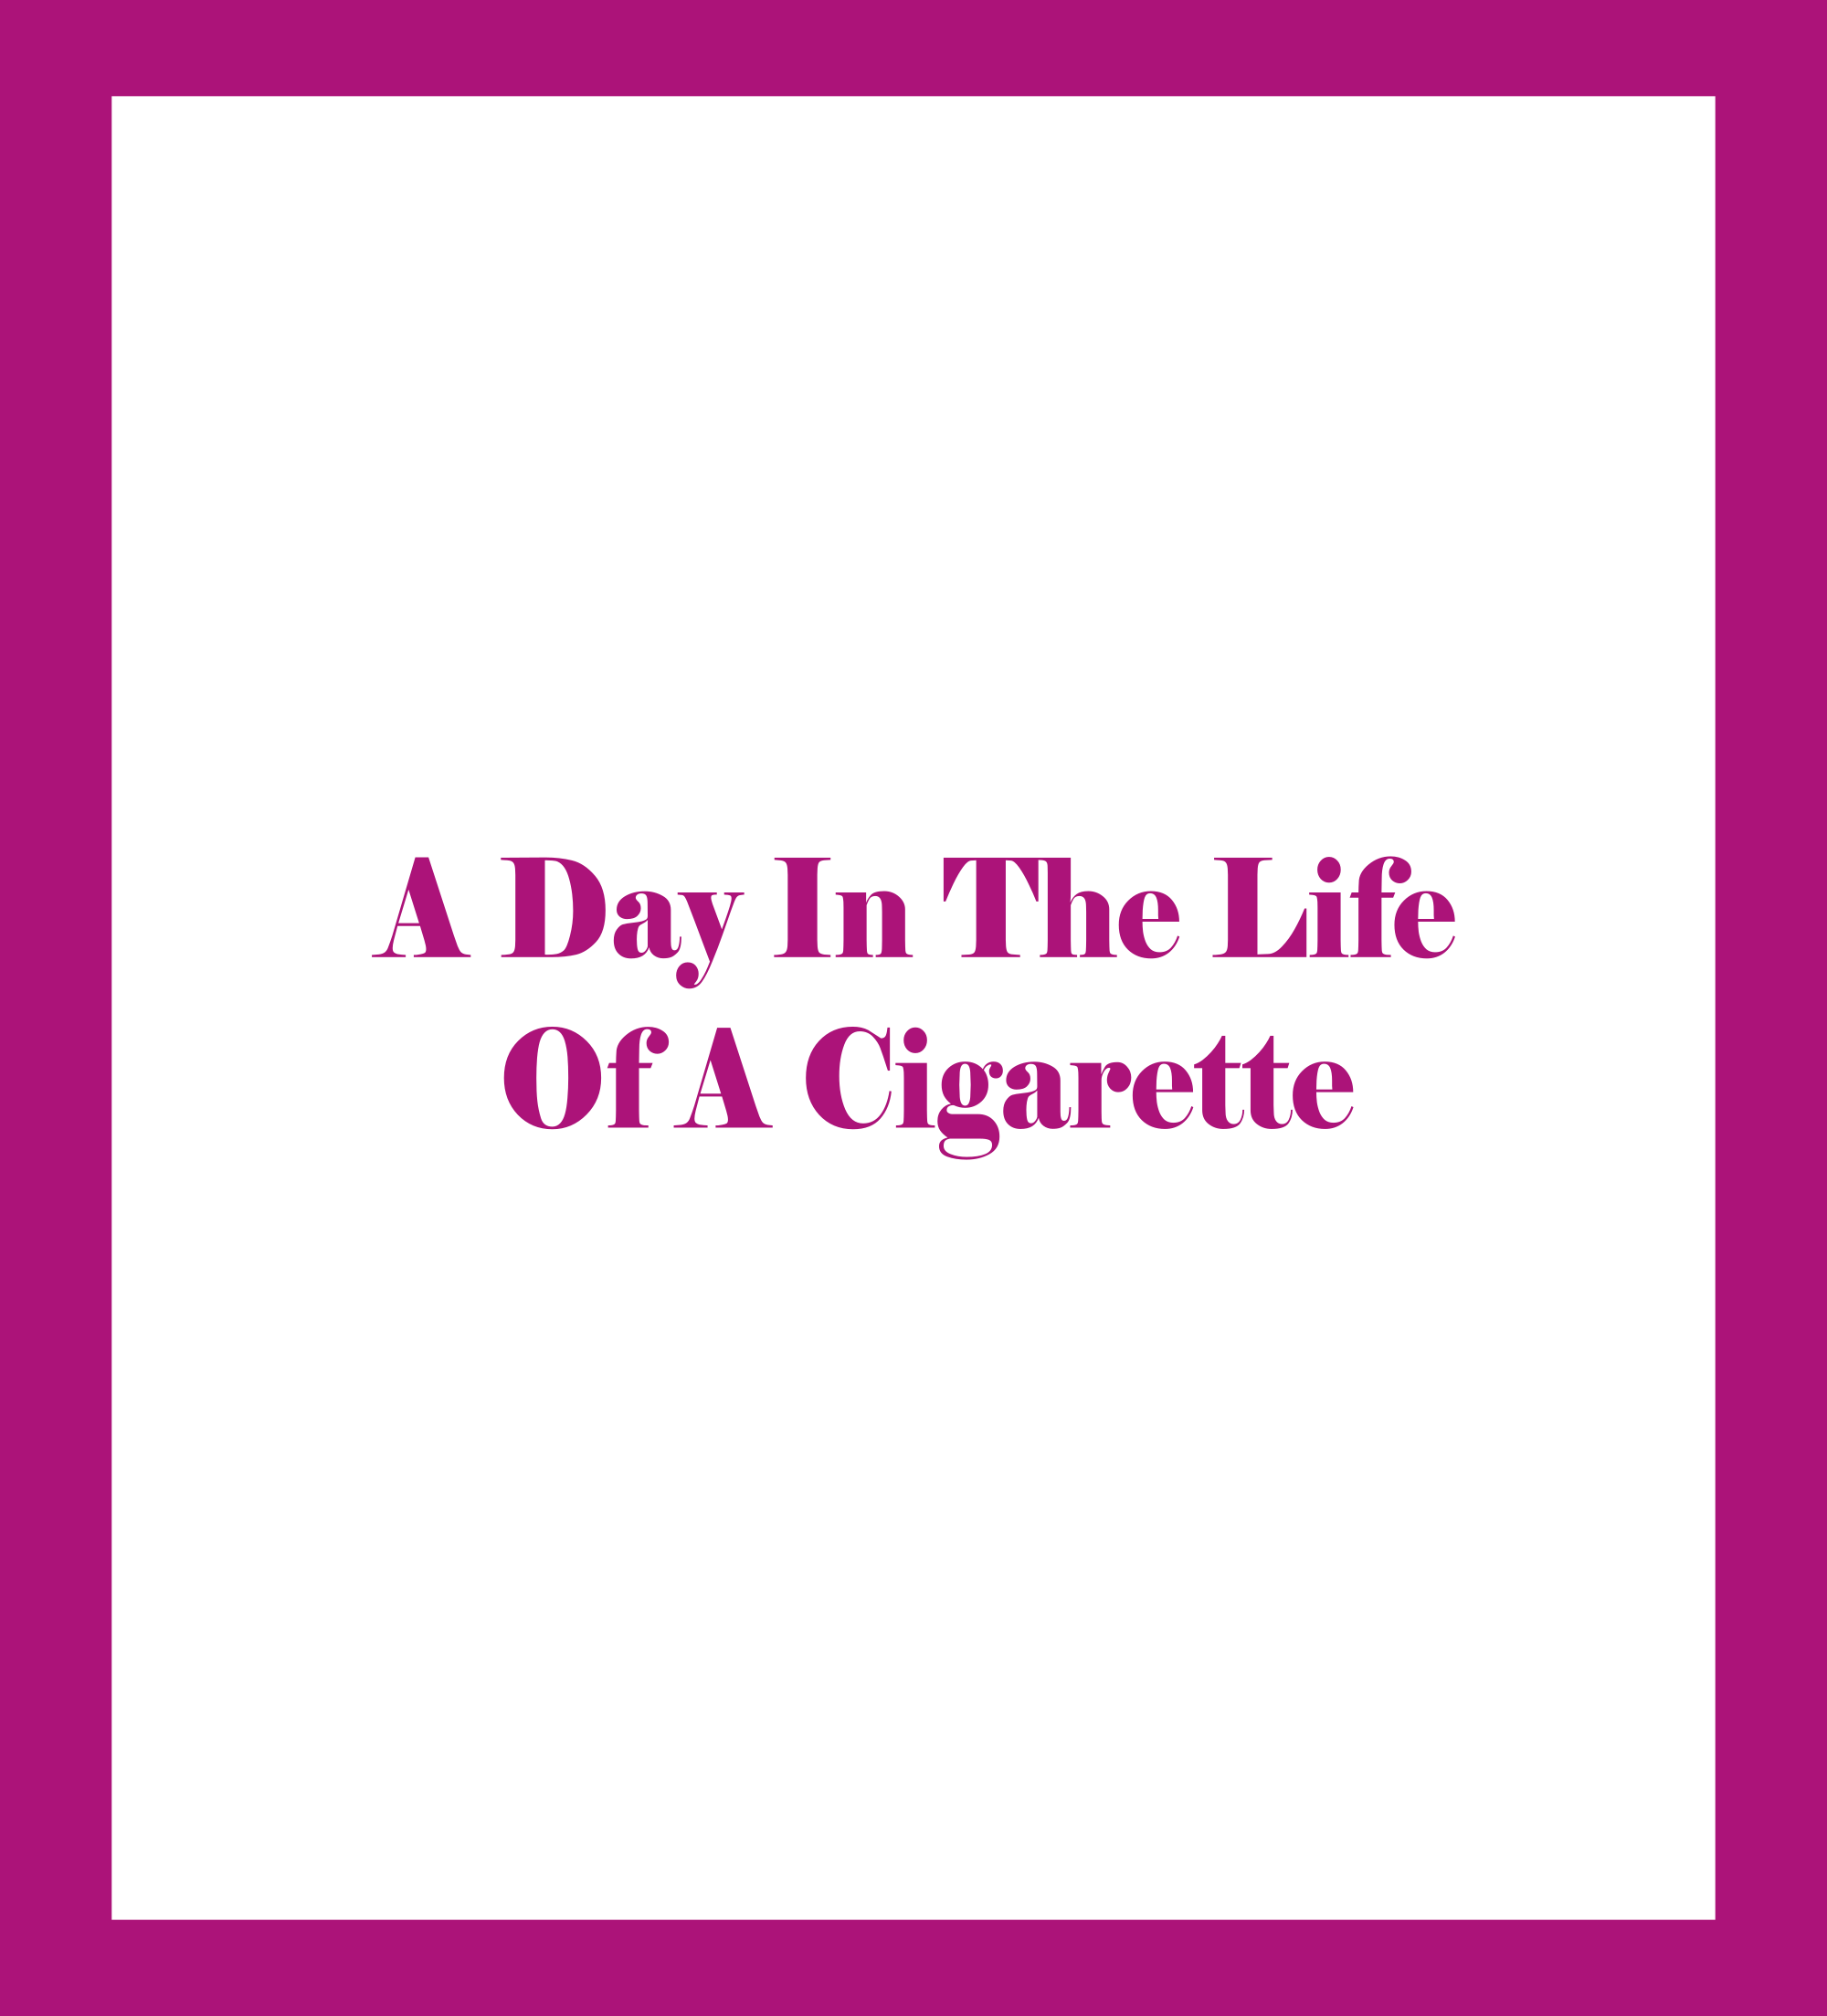 Un día en la vida de un cigarrillo